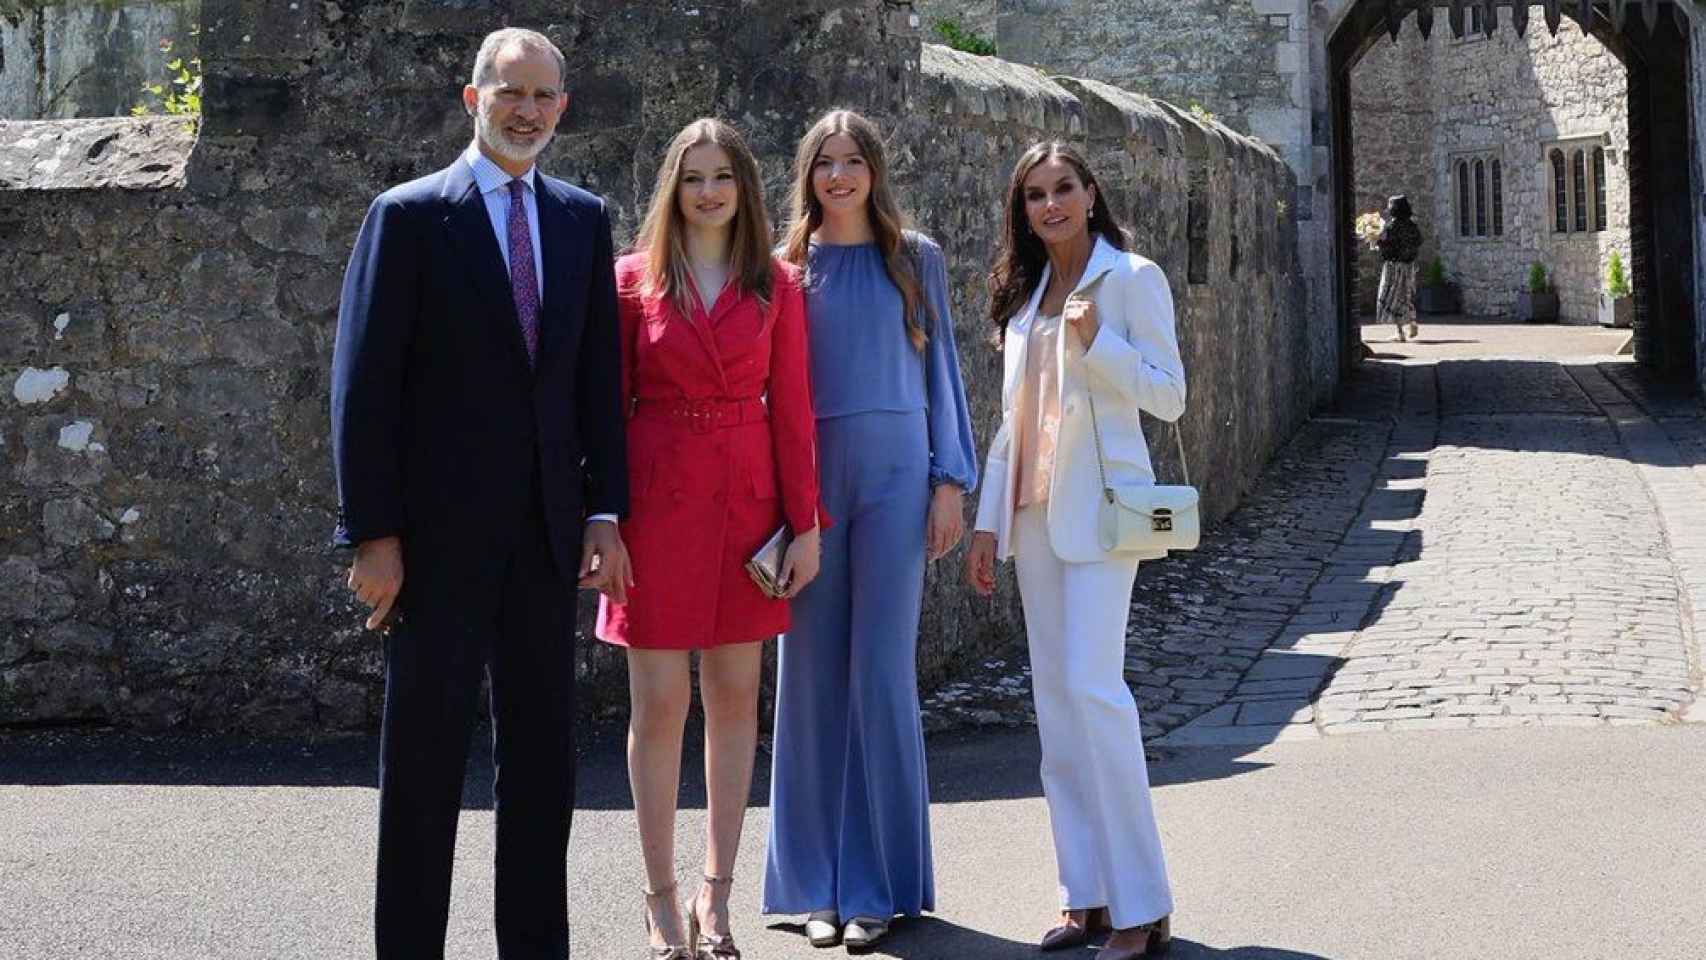 Felipe VI y Letizia junto a sus hijas, Leonor y Sofía, posando a las puertas del colegio de Gales, este sábado 20 de mayo.